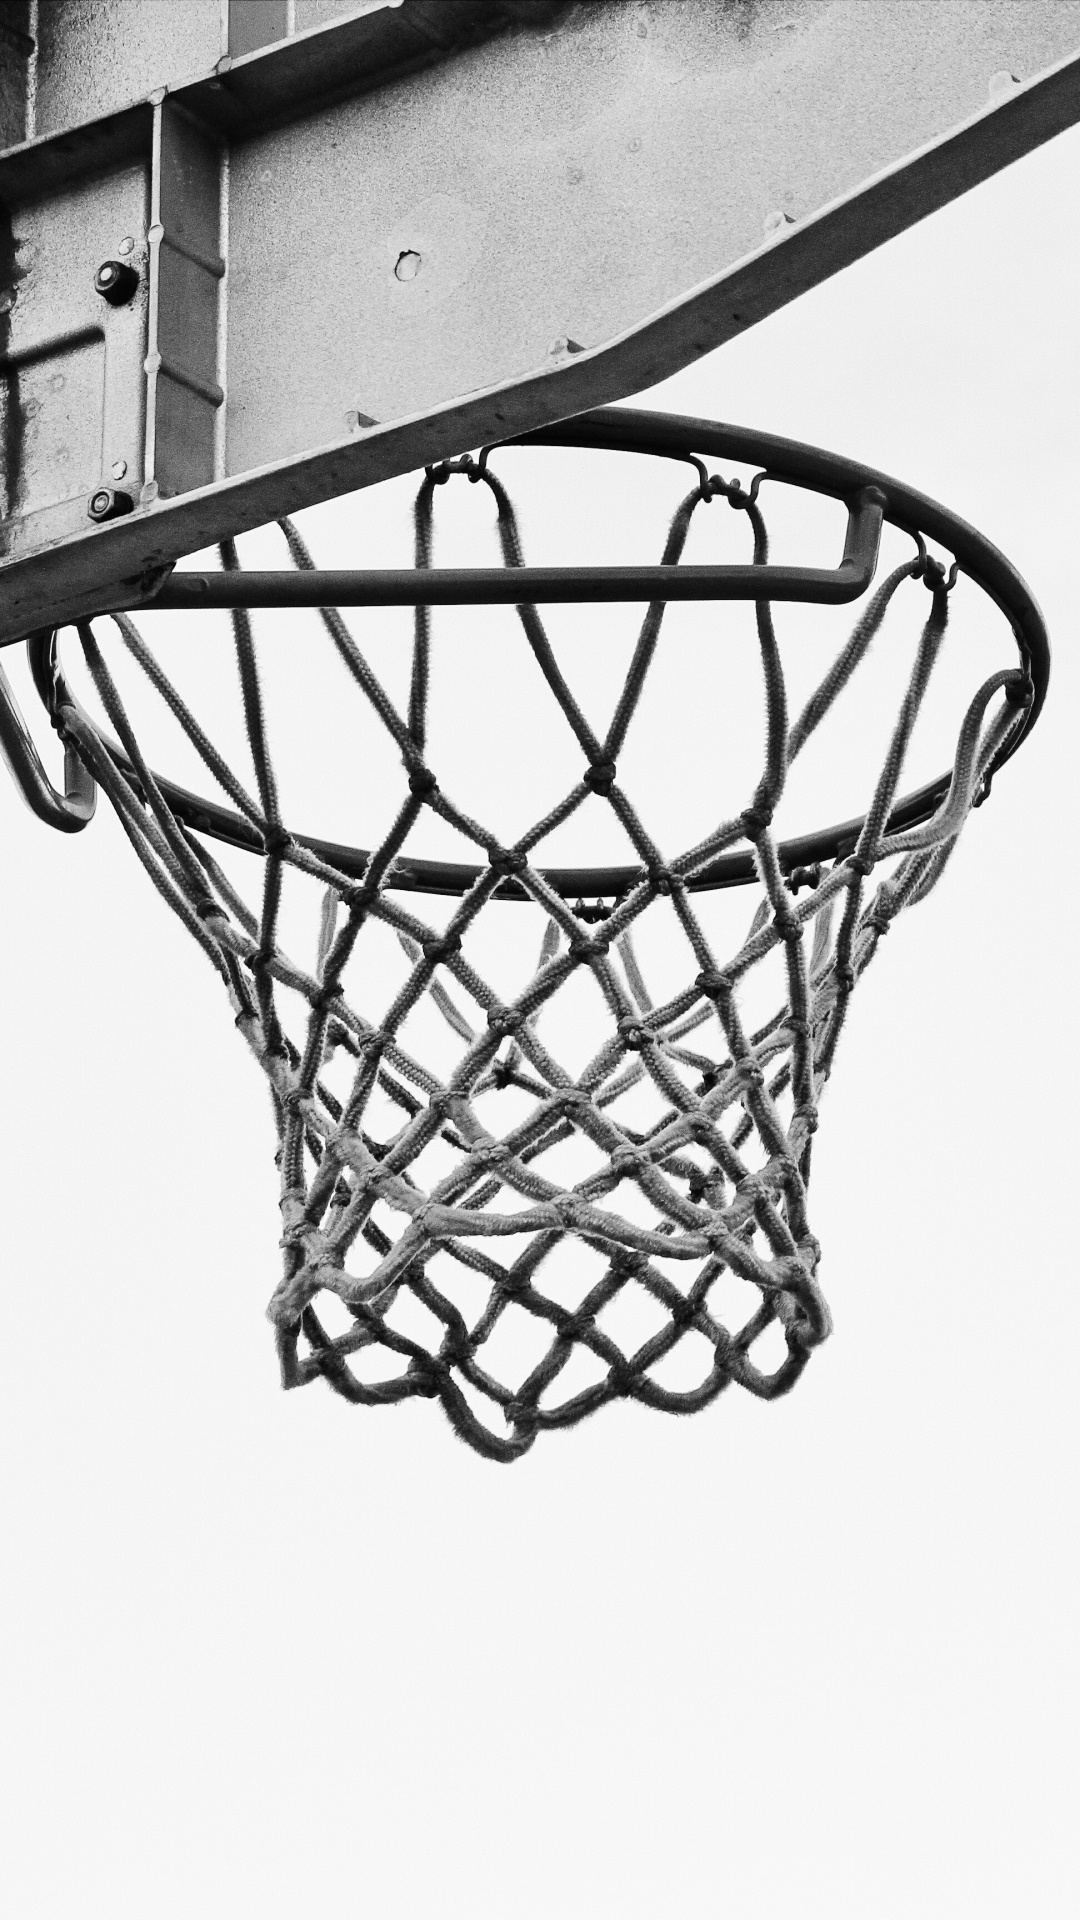 Basketball Auf Basketballkorb in Graustufenfotografie. Wallpaper in 1080x1920 Resolution